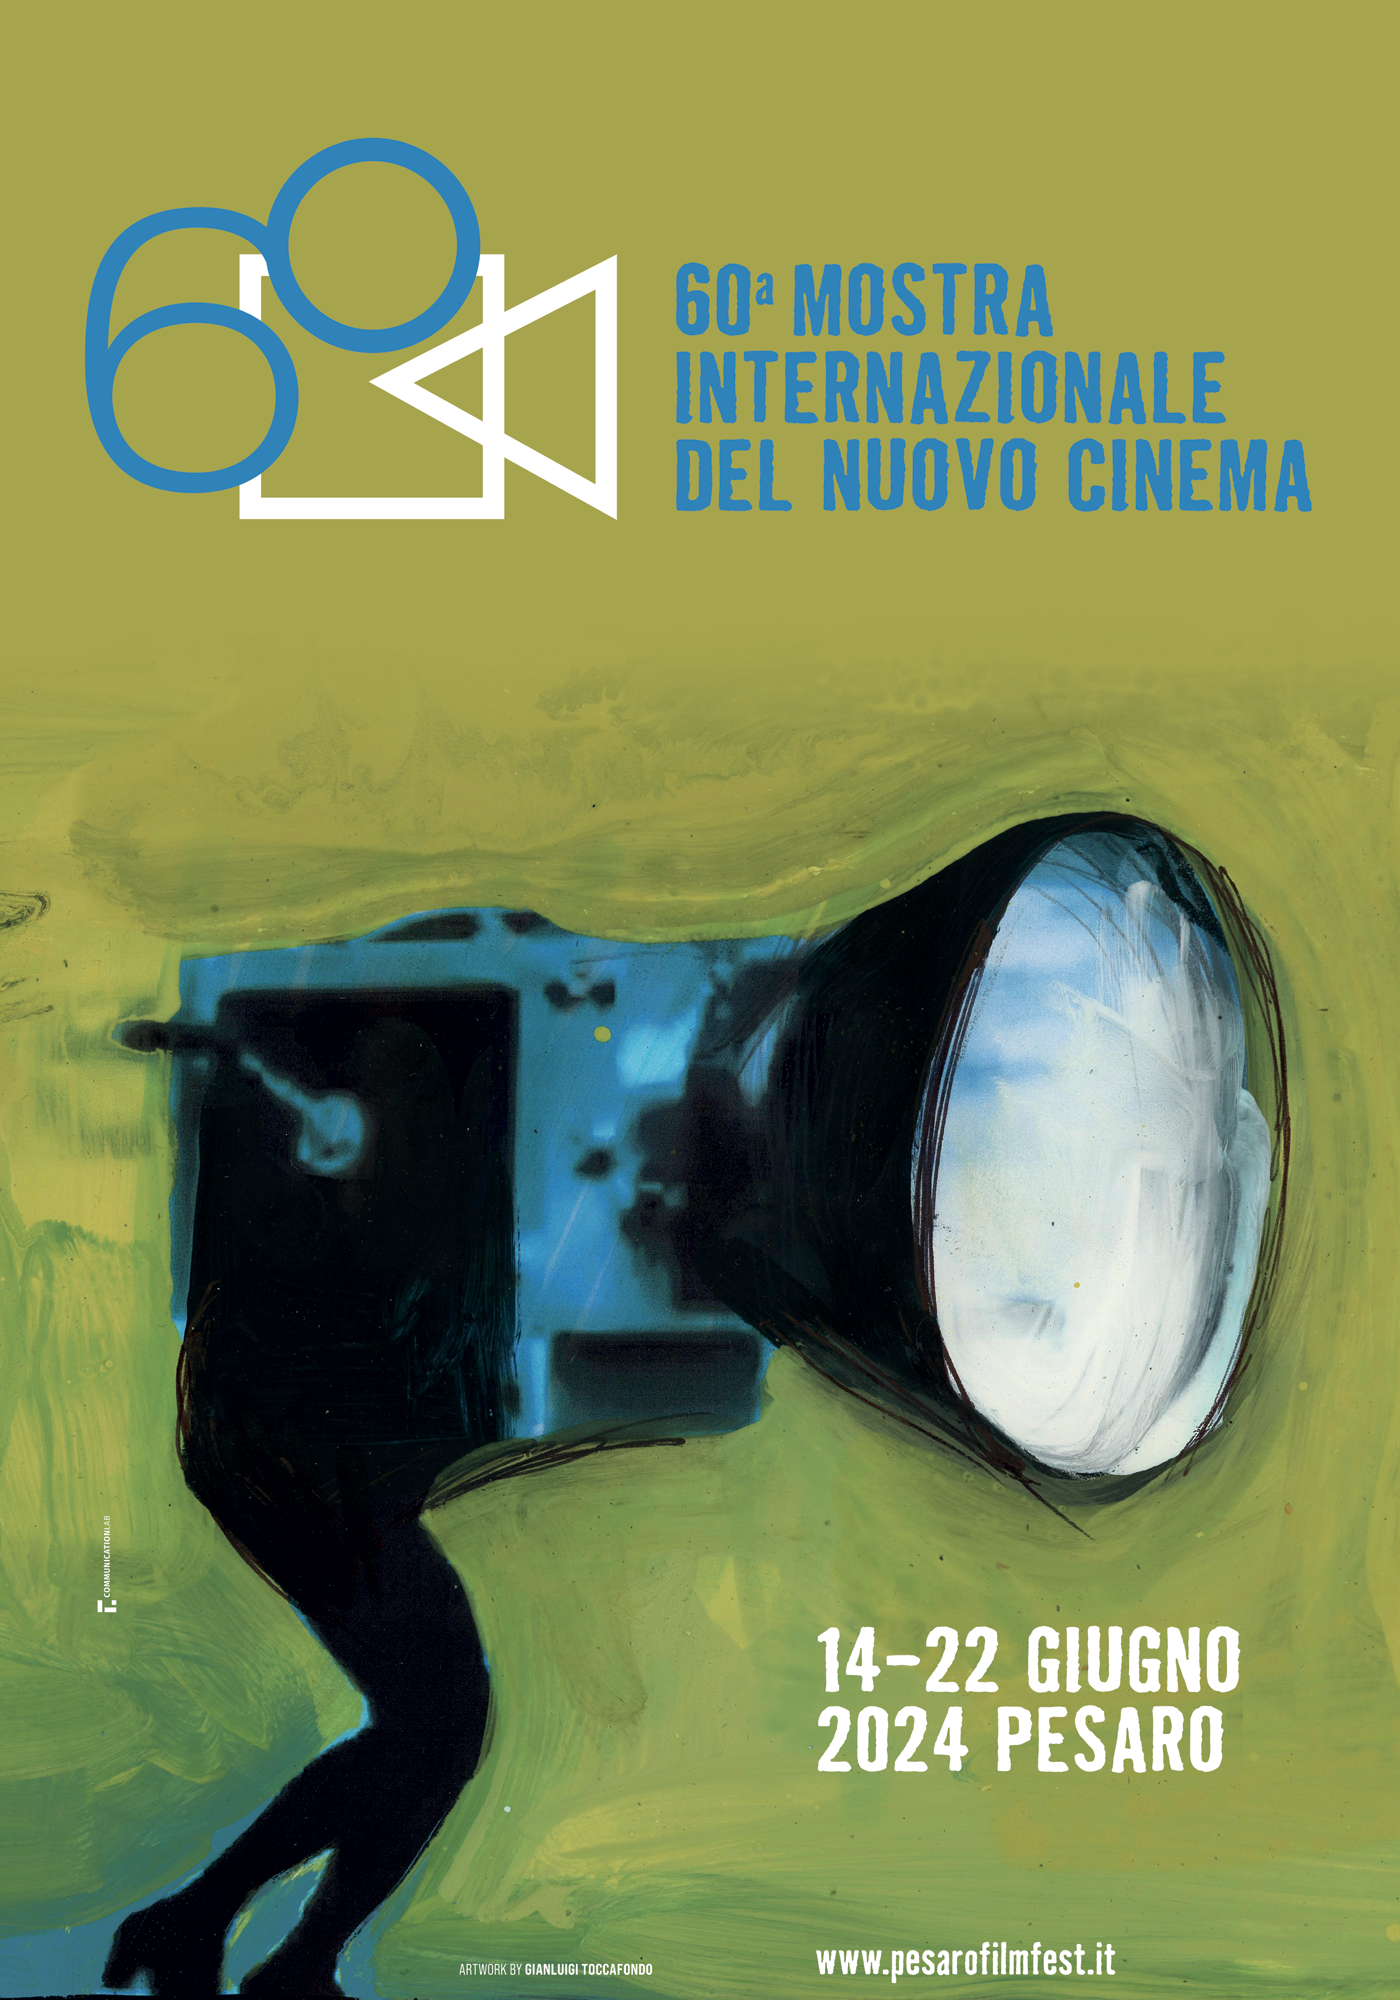 60a Mostra Internazionale del Nuovo Cinema Pesaro, rilasciati il manifesto e la sigla